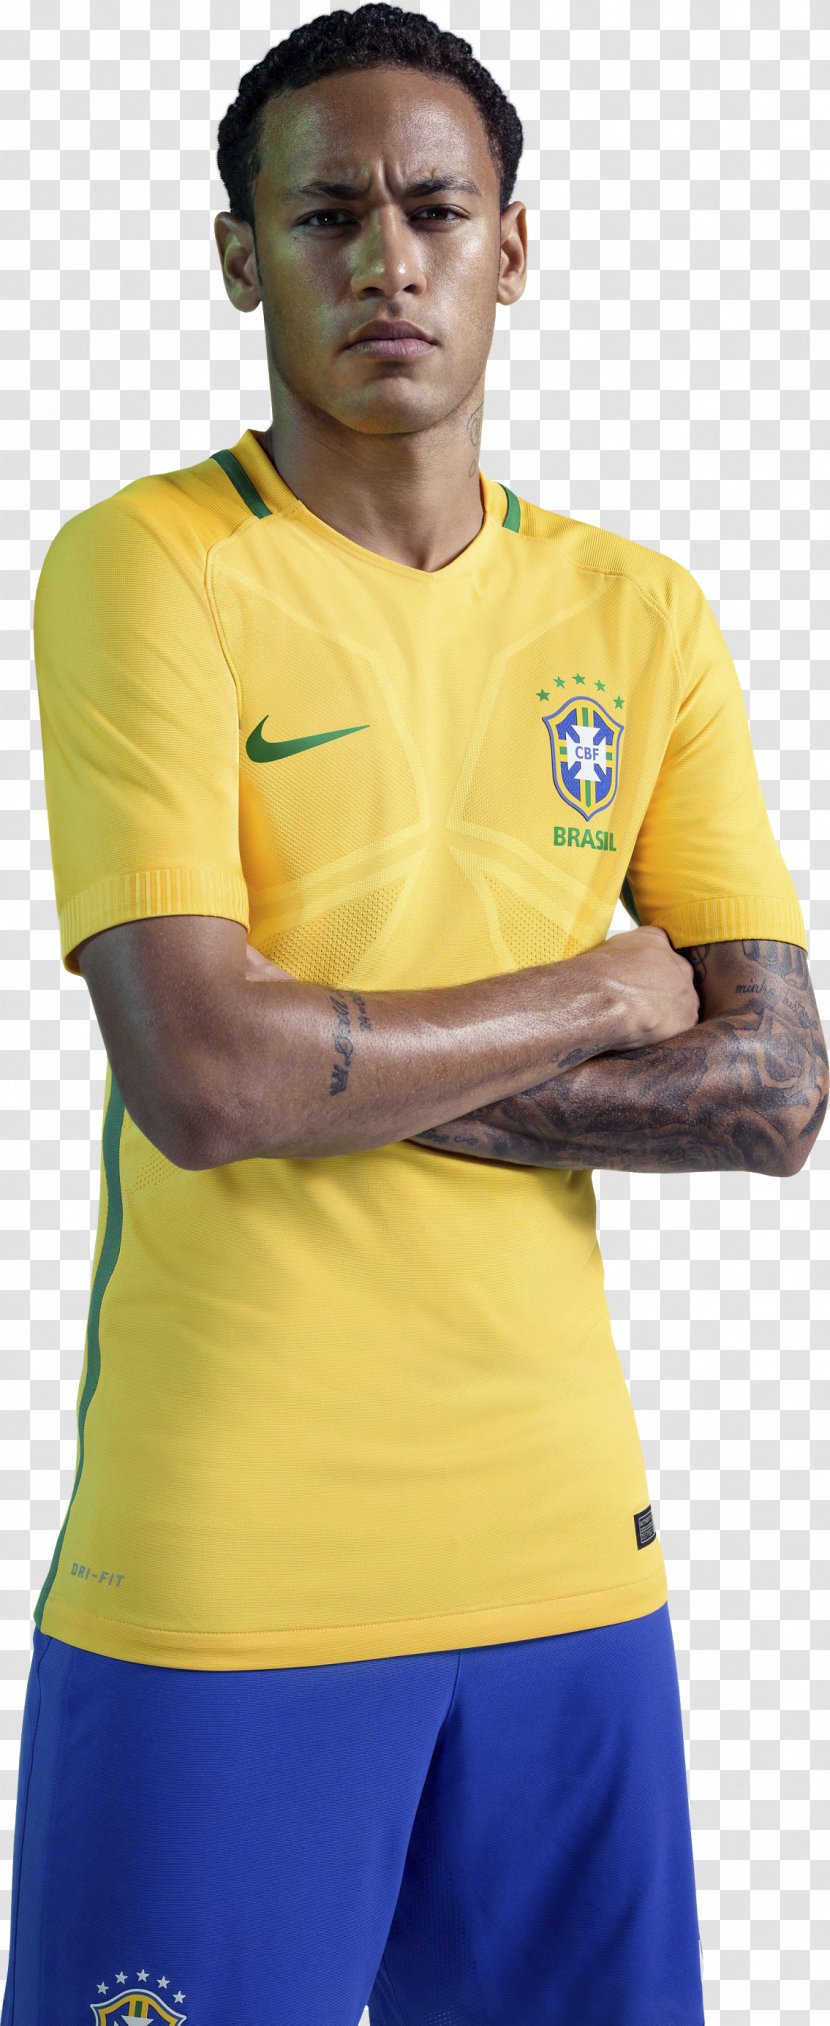 Neymar 2018 World Cup Jersey Brazil National Football Team T-shirt - Tshirt Transparent PNG